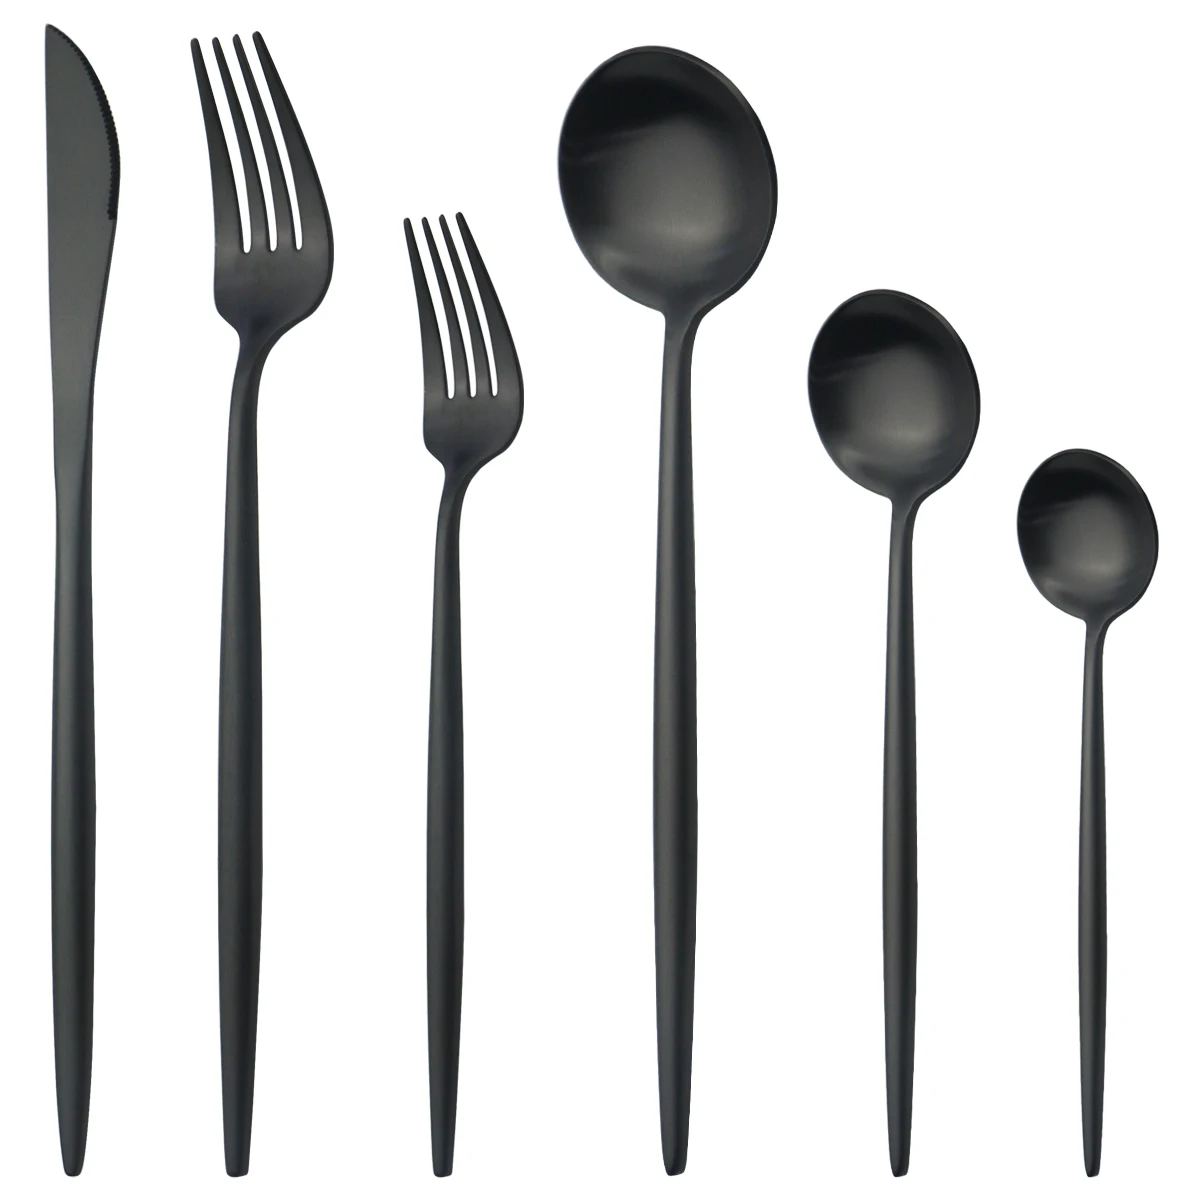 

Черный набор столовых приборов 304 набор посуды из нержавеющей стали матовый нож десерт вилка ложки, столовая посуда набор кухонный ужин наб...